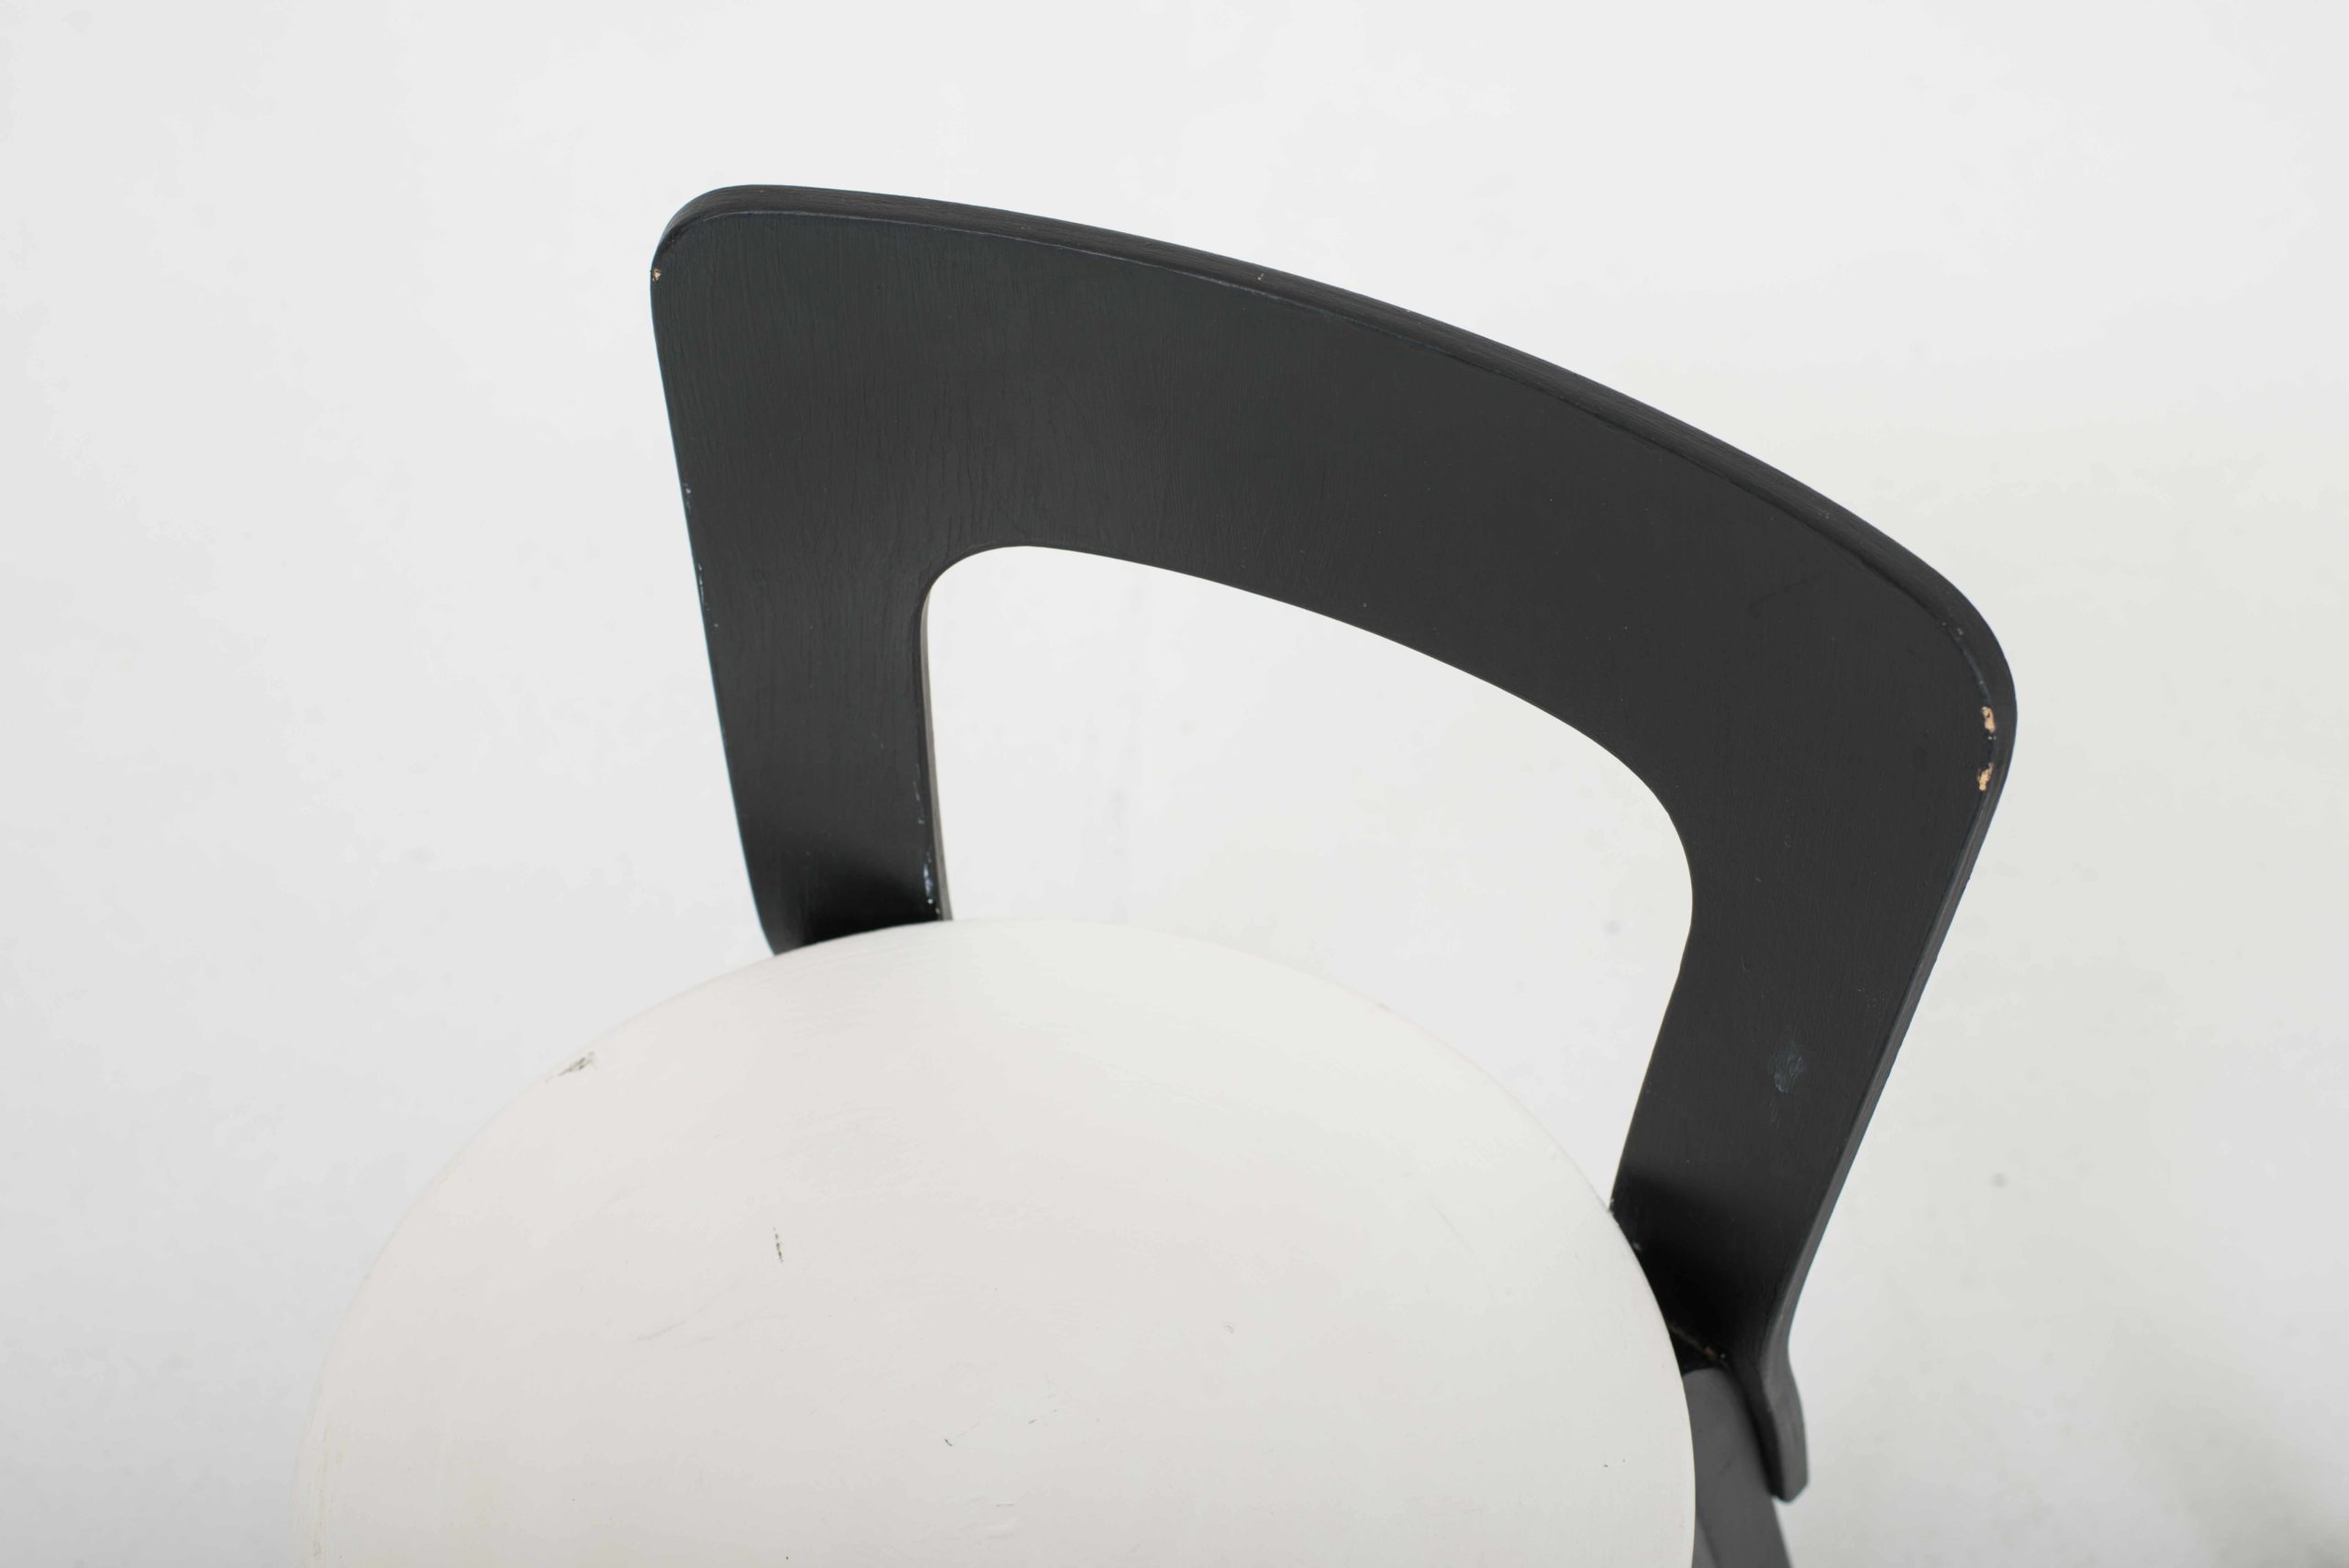 Artek Chair 65 von Alvar Aalto, im Zweierset-3